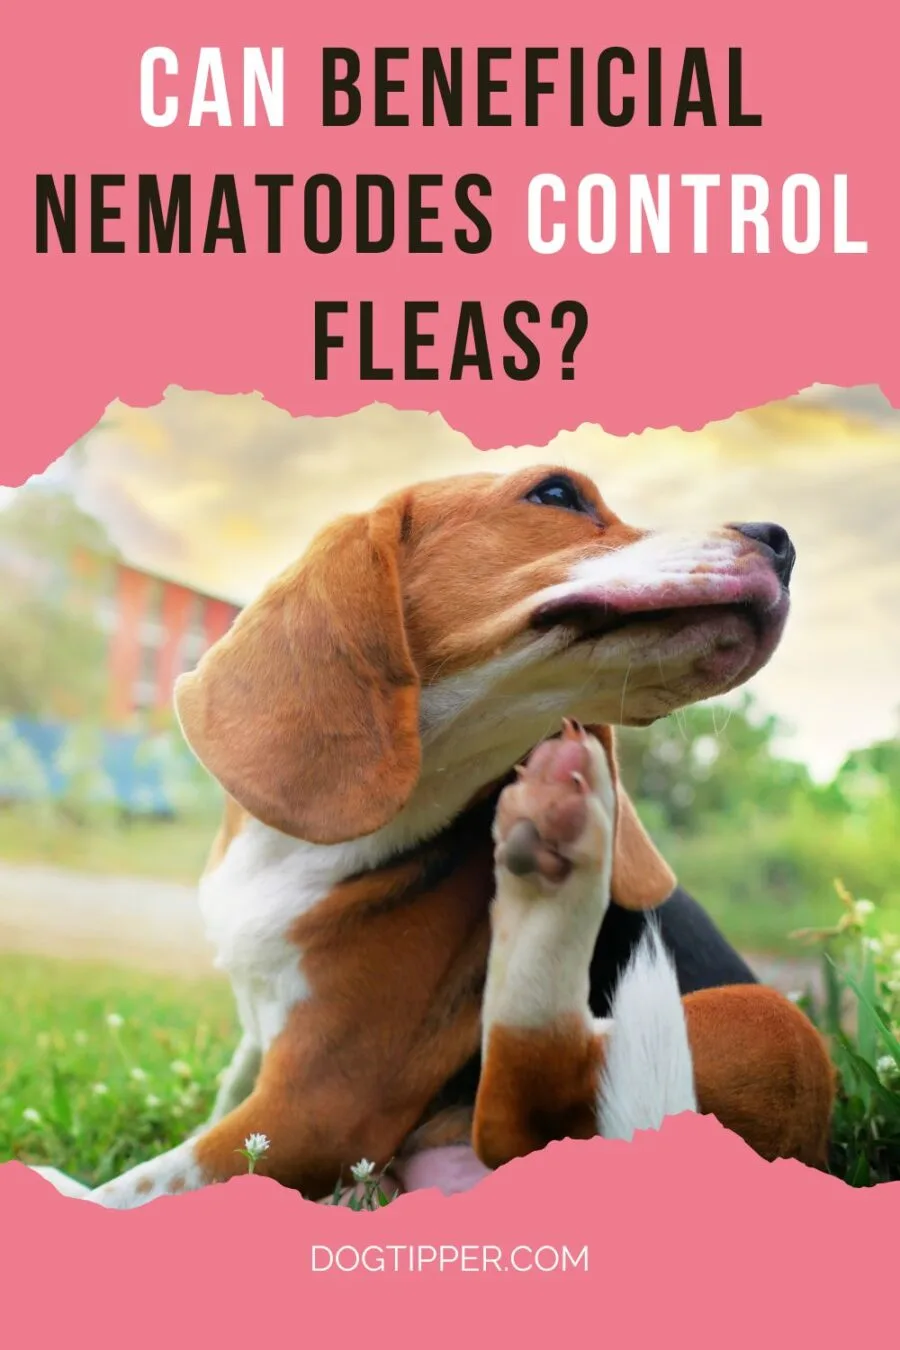 Can beneficial nematodes control fleas?